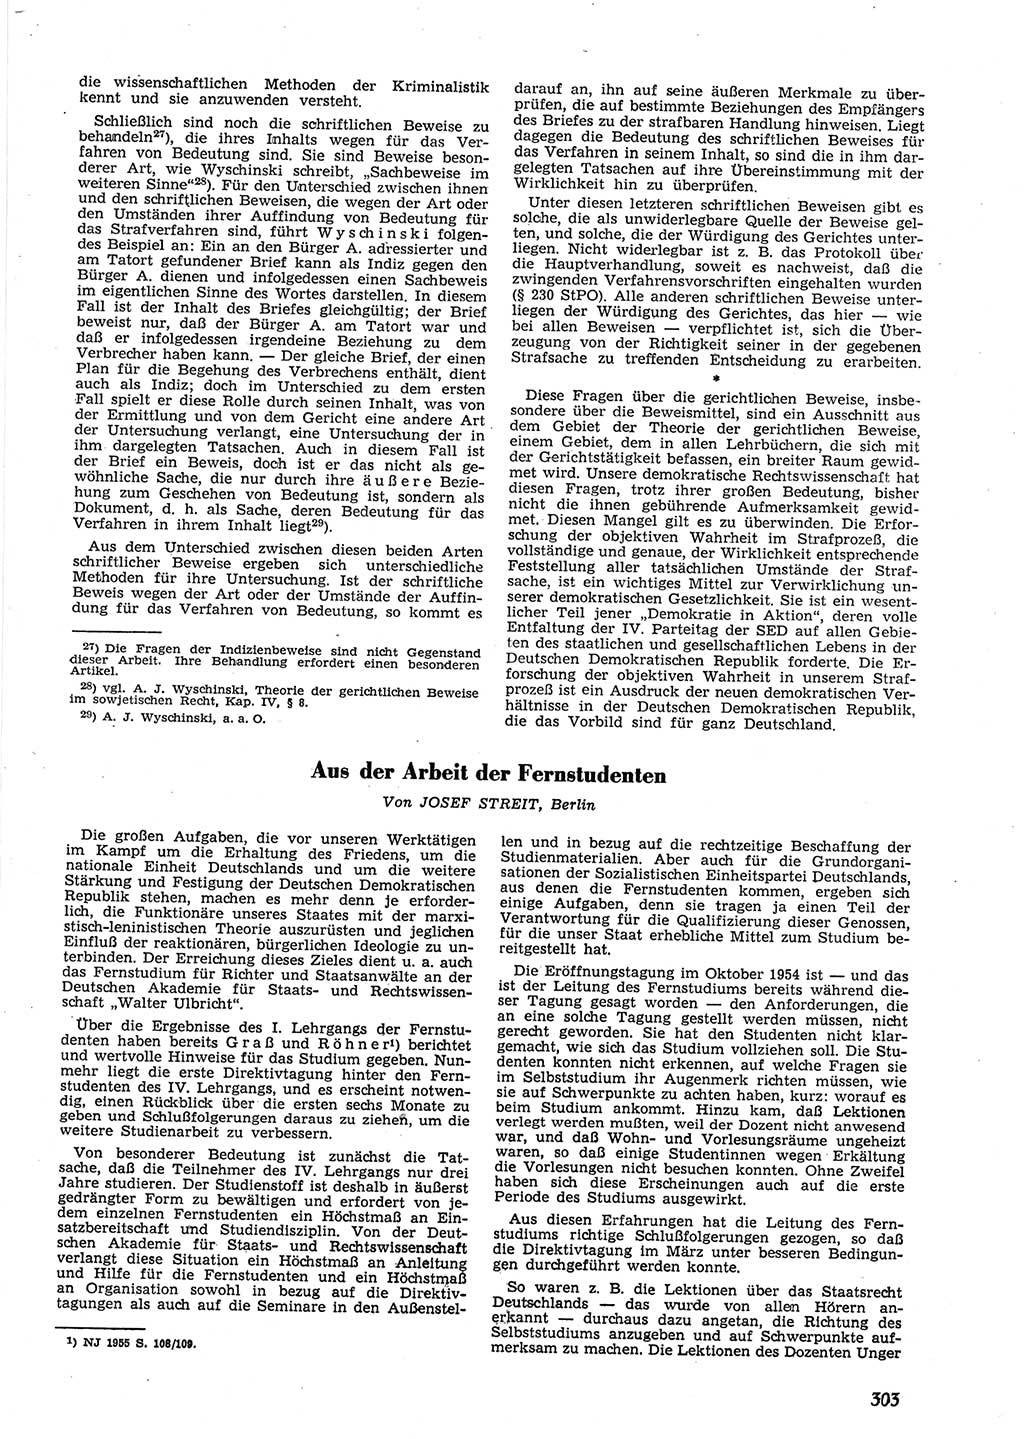 Neue Justiz (NJ), Zeitschrift für Recht und Rechtswissenschaft [Deutsche Demokratische Republik (DDR)], 9. Jahrgang 1955, Seite 303 (NJ DDR 1955, S. 303)